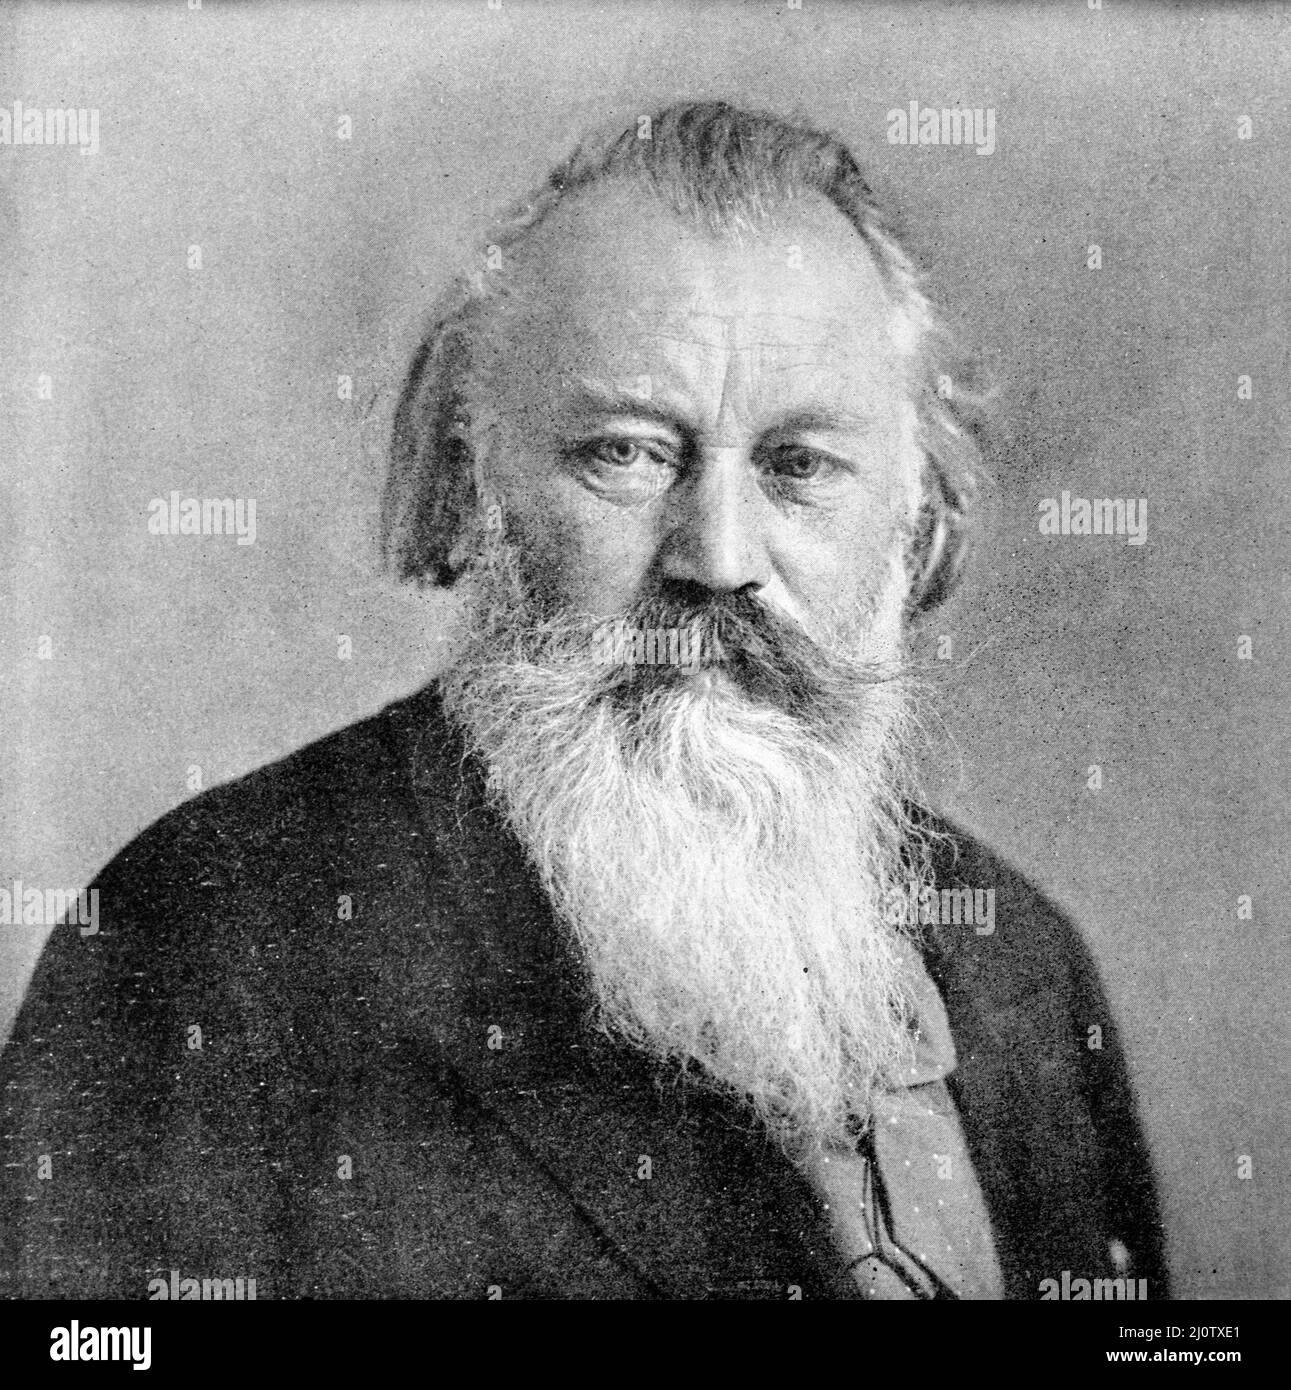 Porträt des deutschen Komponisten Johannes Brahms (*7. Mai 1833 in Hamburg; gestorben 3. April 1897 in Wien) Stockfoto